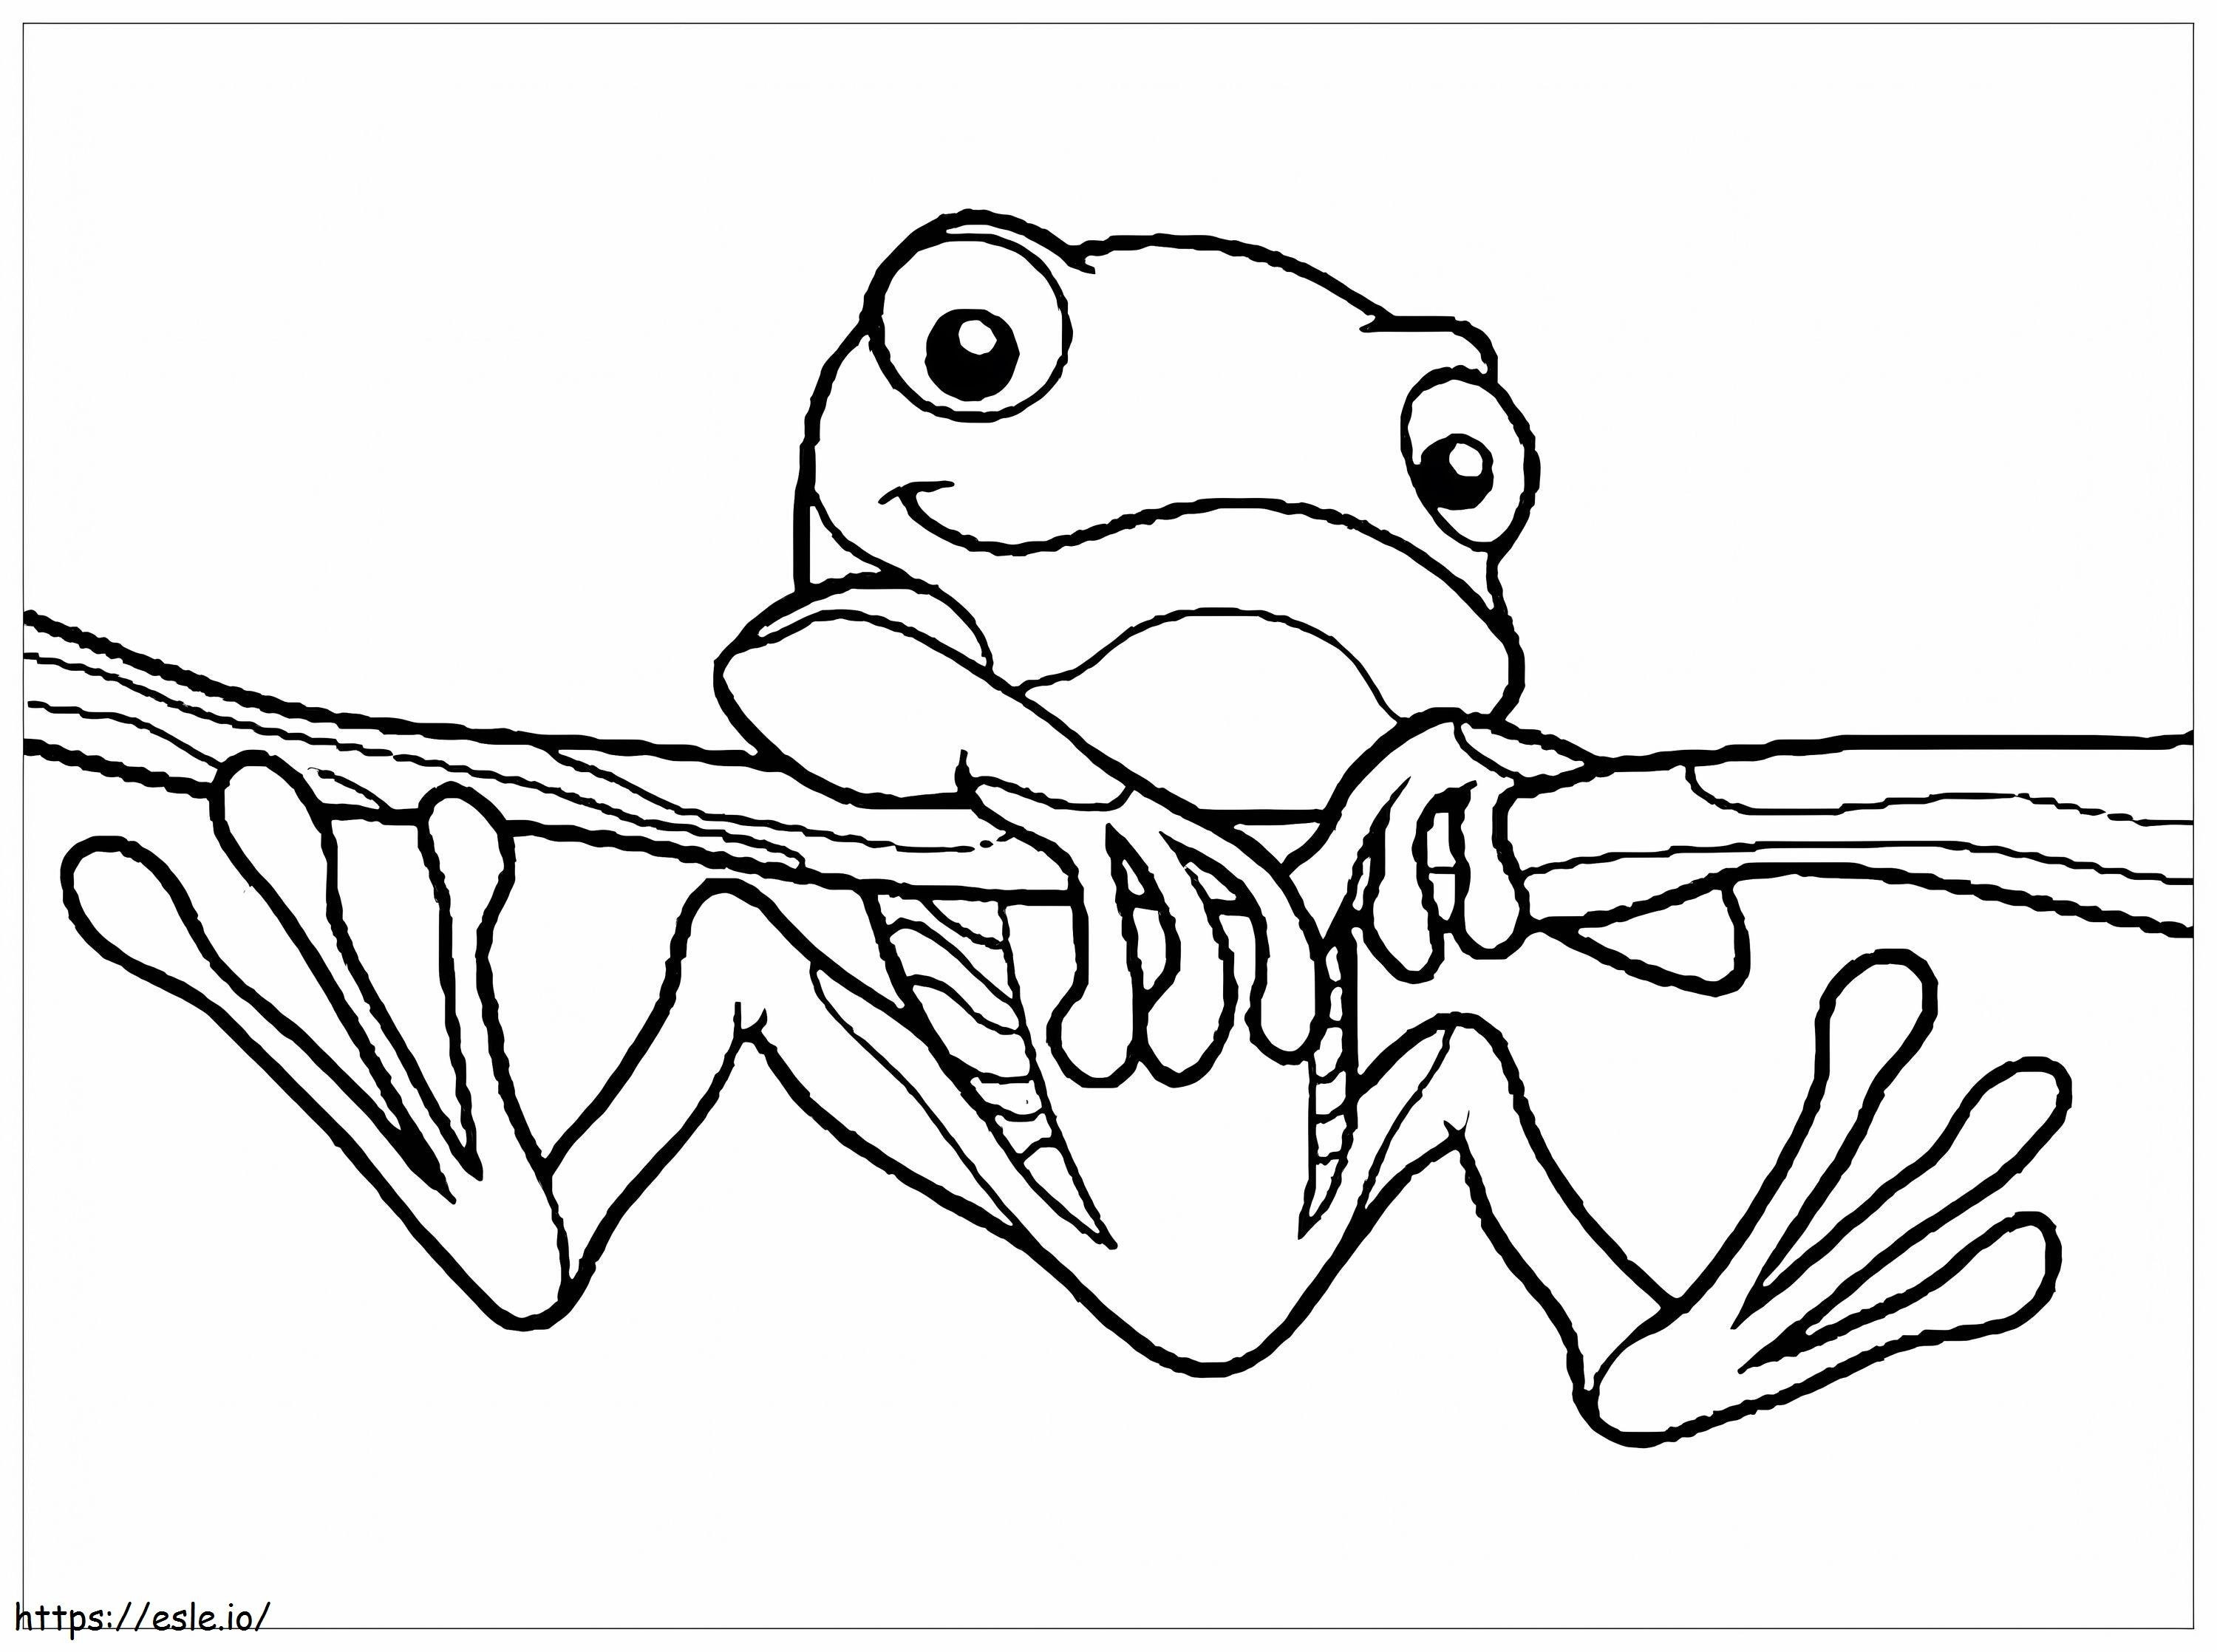 Niedlicher Frosch, der auf einen Ast klettert ausmalbilder